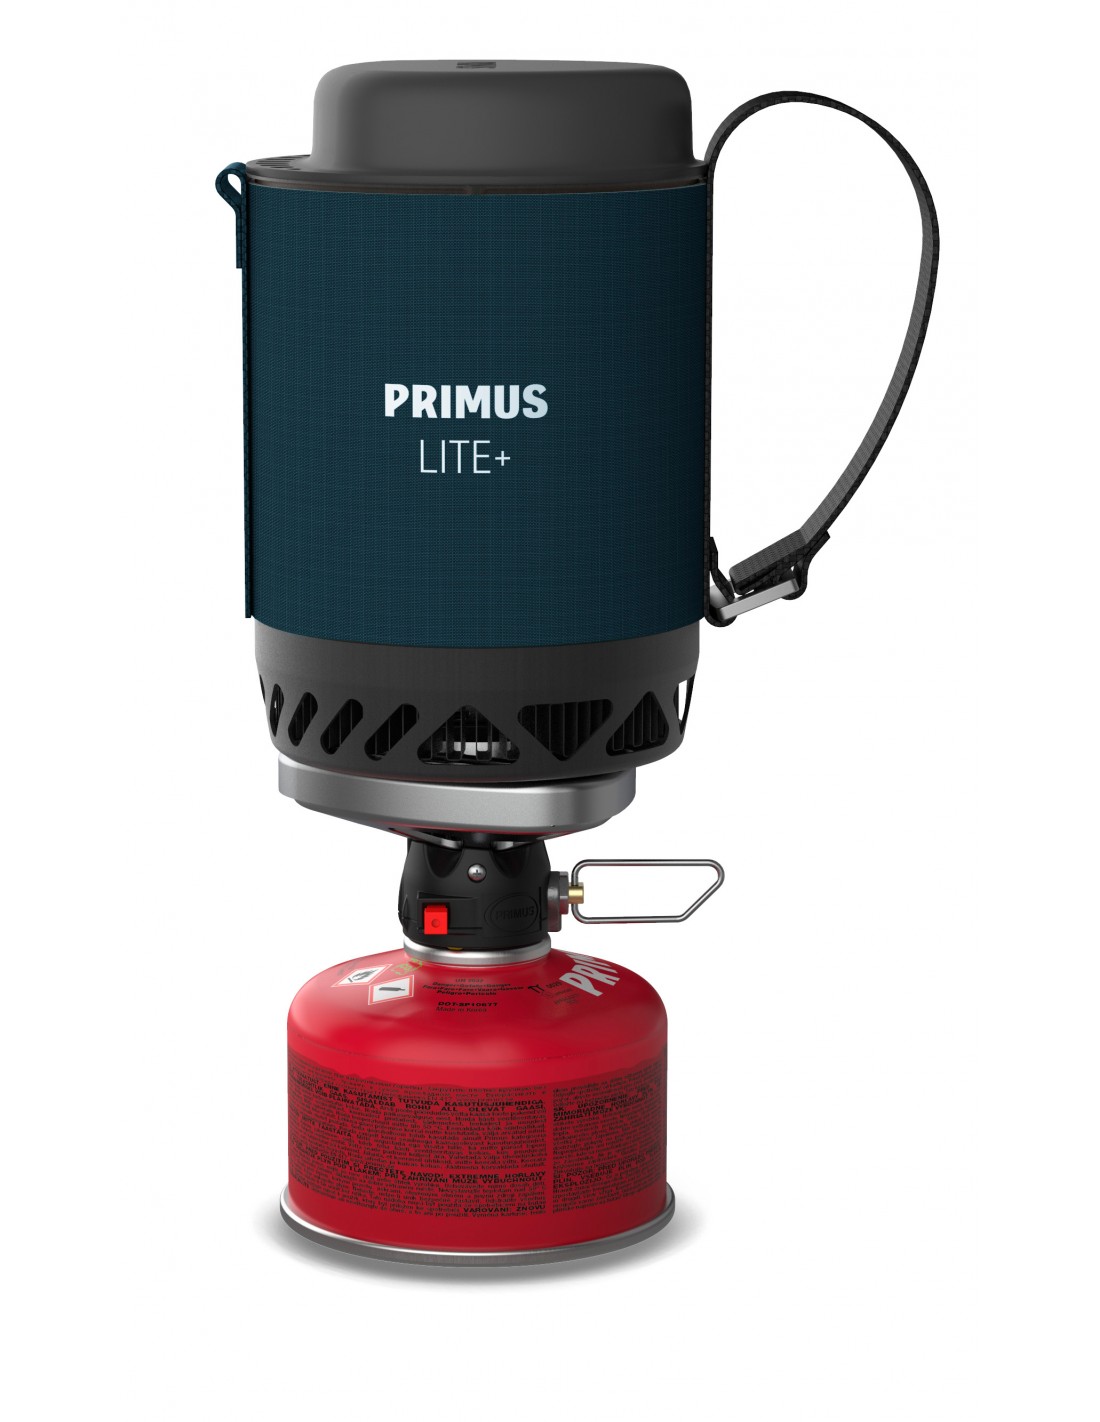 Primus Lite Plus Stove System Blue Kocher Konstruktion - Kartusche darunter, Kocher Brennstoff - Butan / Propan, Kocher Variante - Einflammenkocher, von Primus